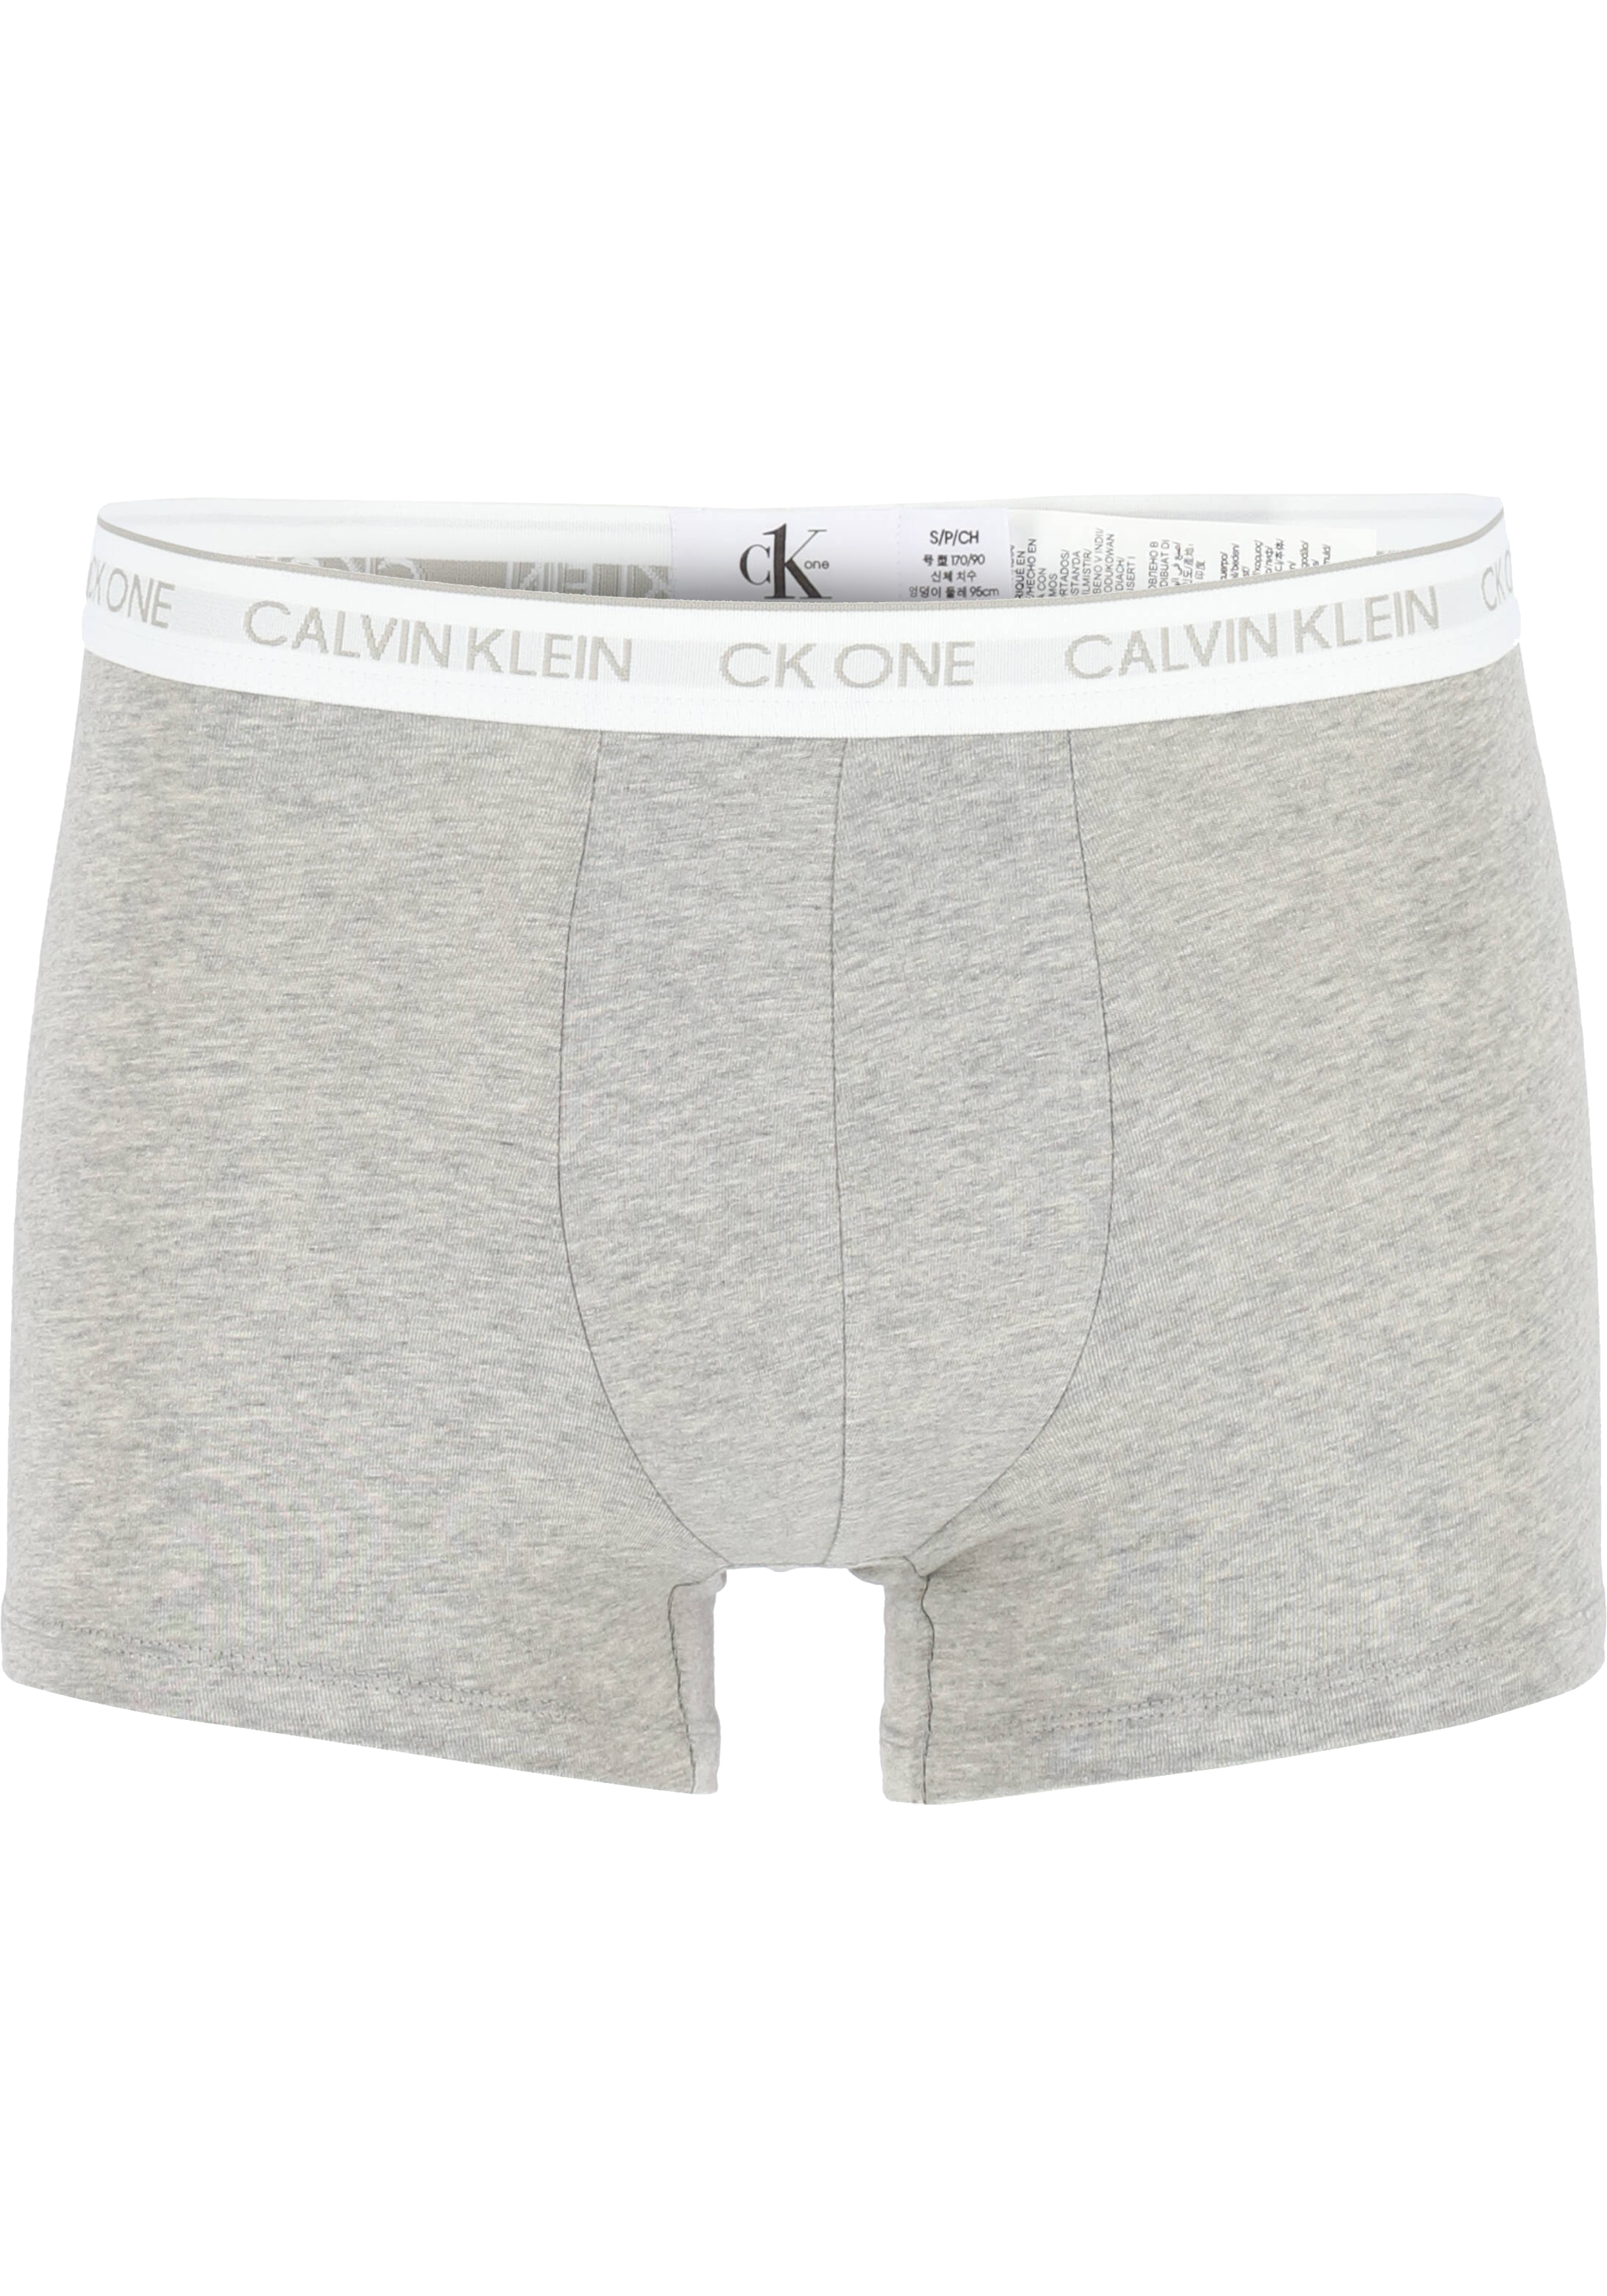 Bijdrager Ooit bereiden Calvin Klein CK ONE Cotton trunk (1-pack), heren boxer normale lengte,... -  Shop de nieuwste voorjaarsmode